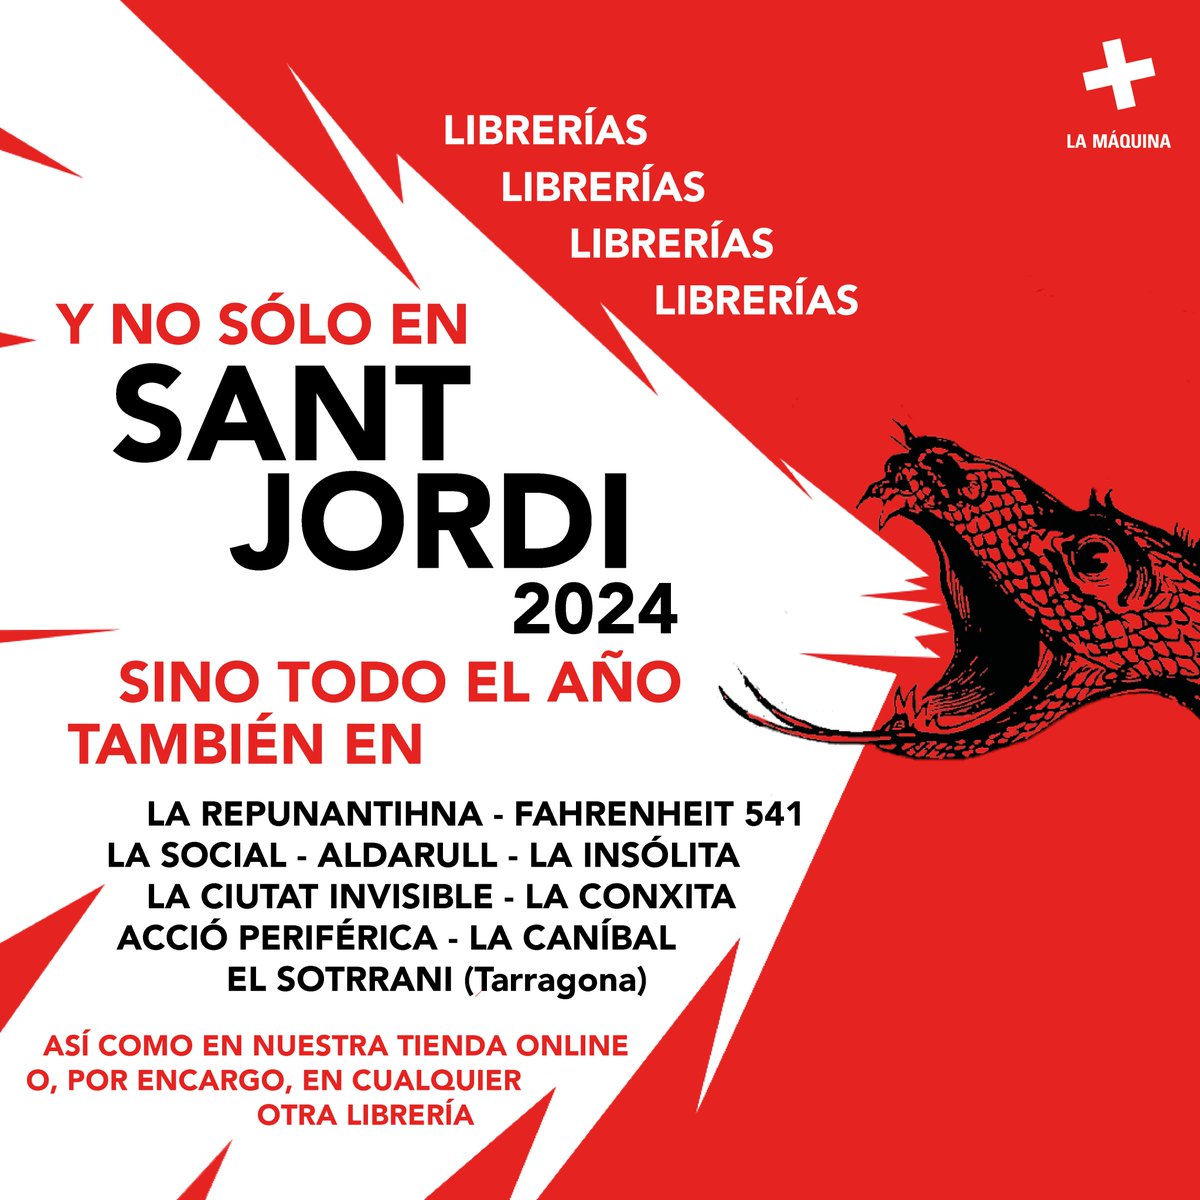 Este Sant Jordi estaremos en la calle y el resto del año,  siempre, en las librerías.
#SantJordiPopular